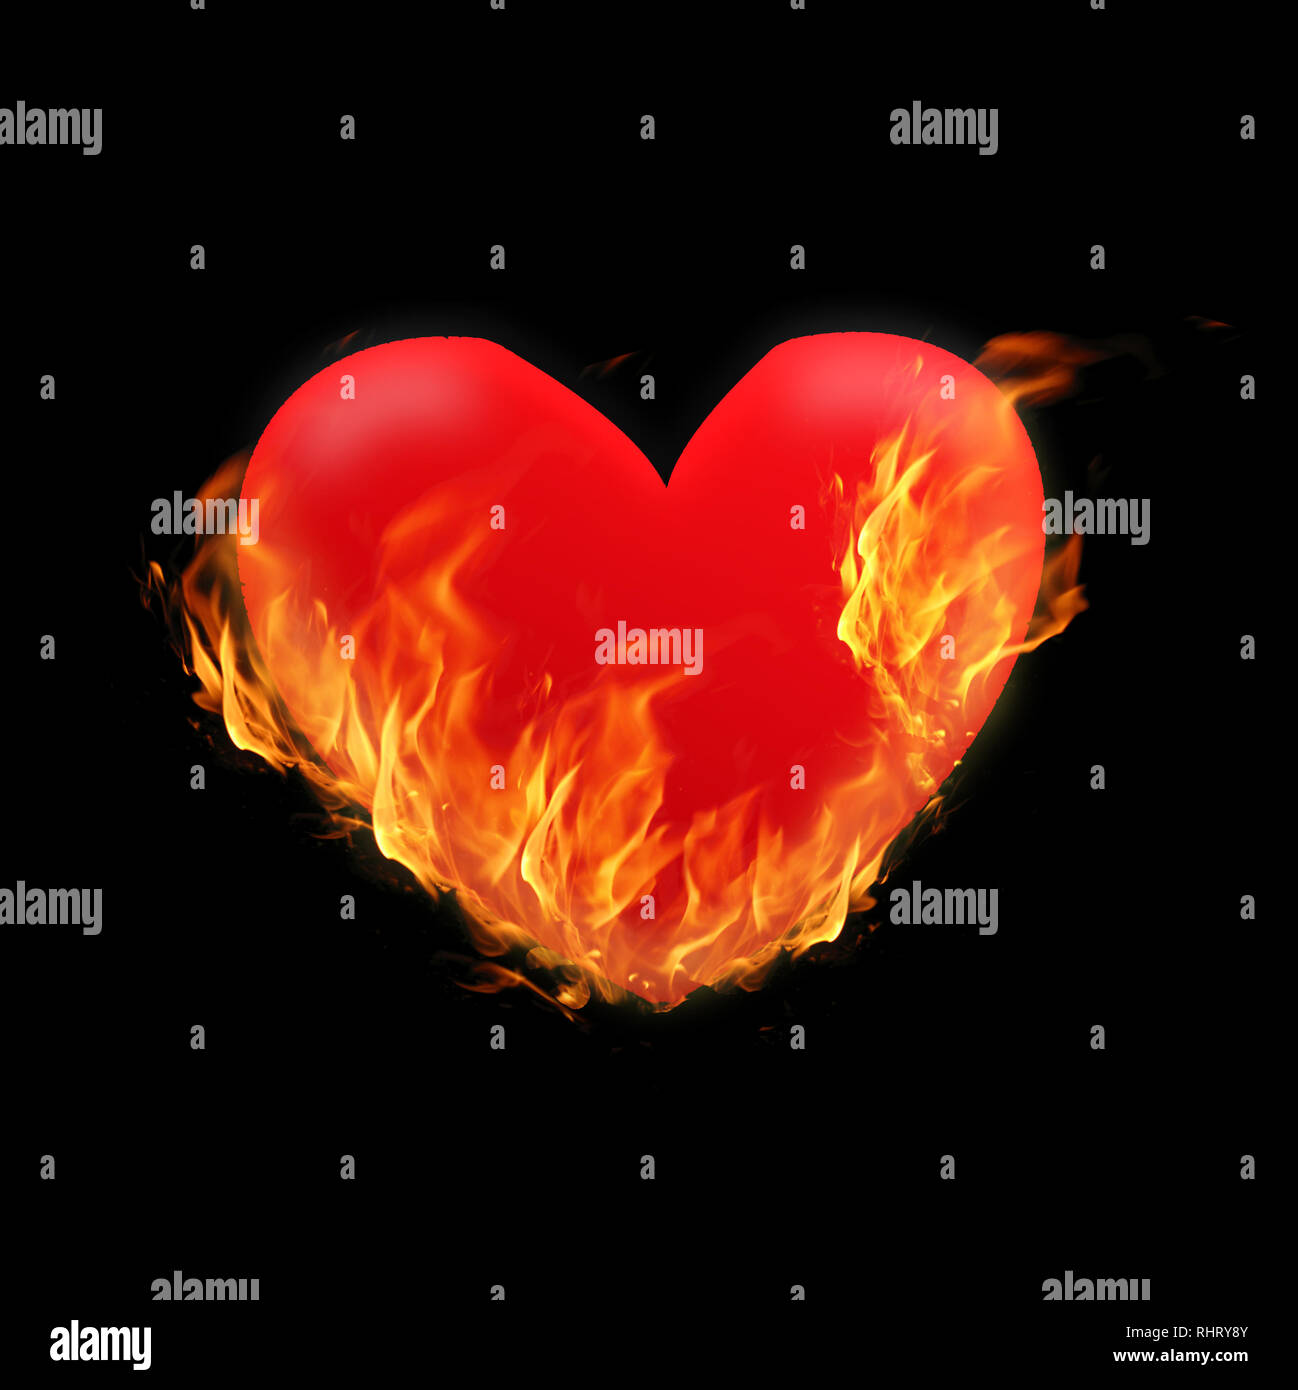 Burning Heart - Abbildung auf schwarzen Hintergrund mit lodernden Flammen. Konzept für Design zum Valentines Tag, oder kardiologische Erkrankungen, Herzinfarkt, Stockfoto